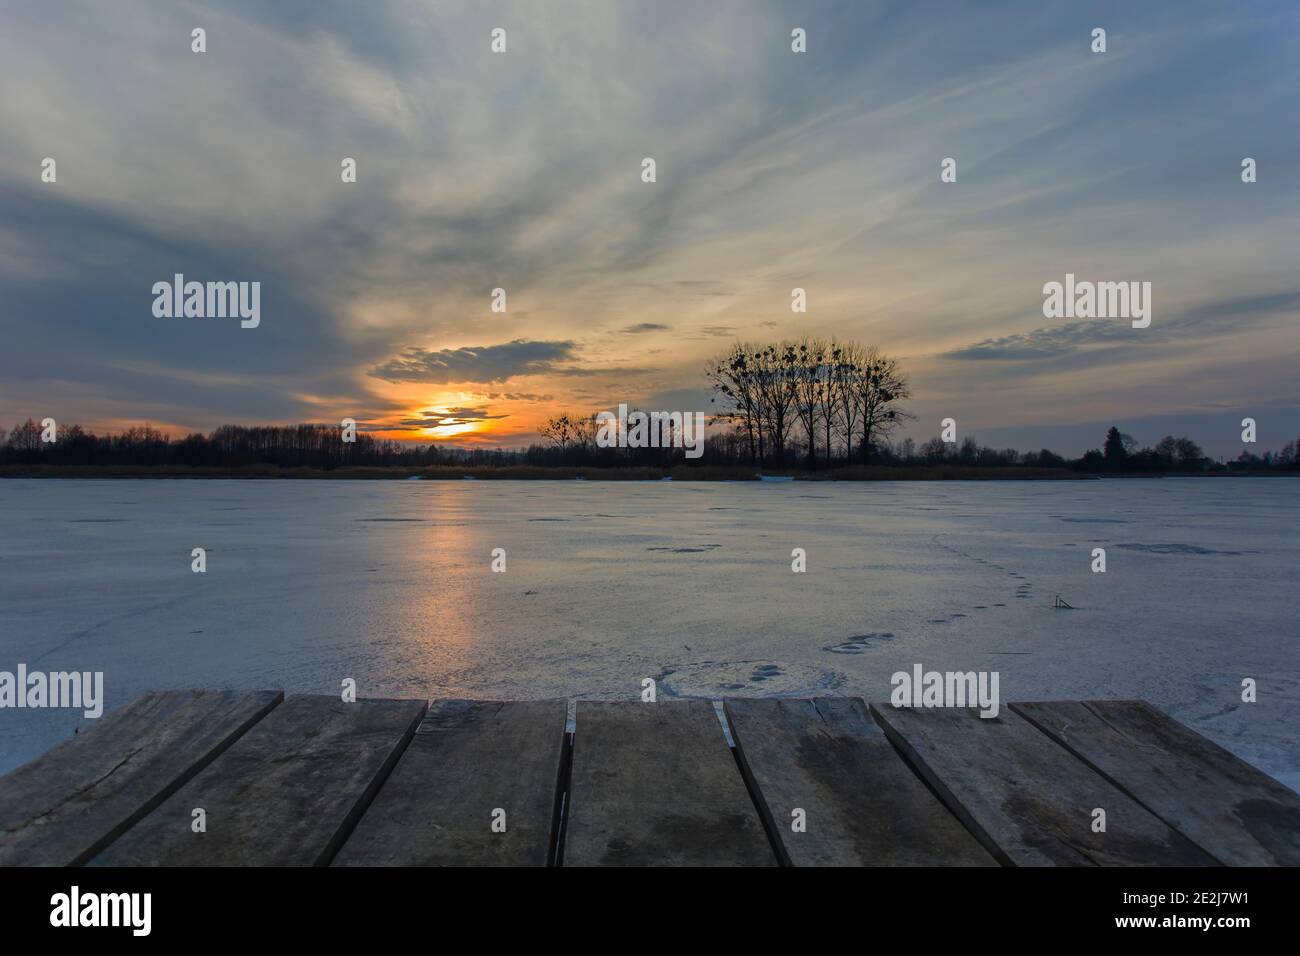 Plattform von Brettern auf einem gefrorenen See, schöner Sonnenuntergang am Himmel, Winterblick Stockfoto